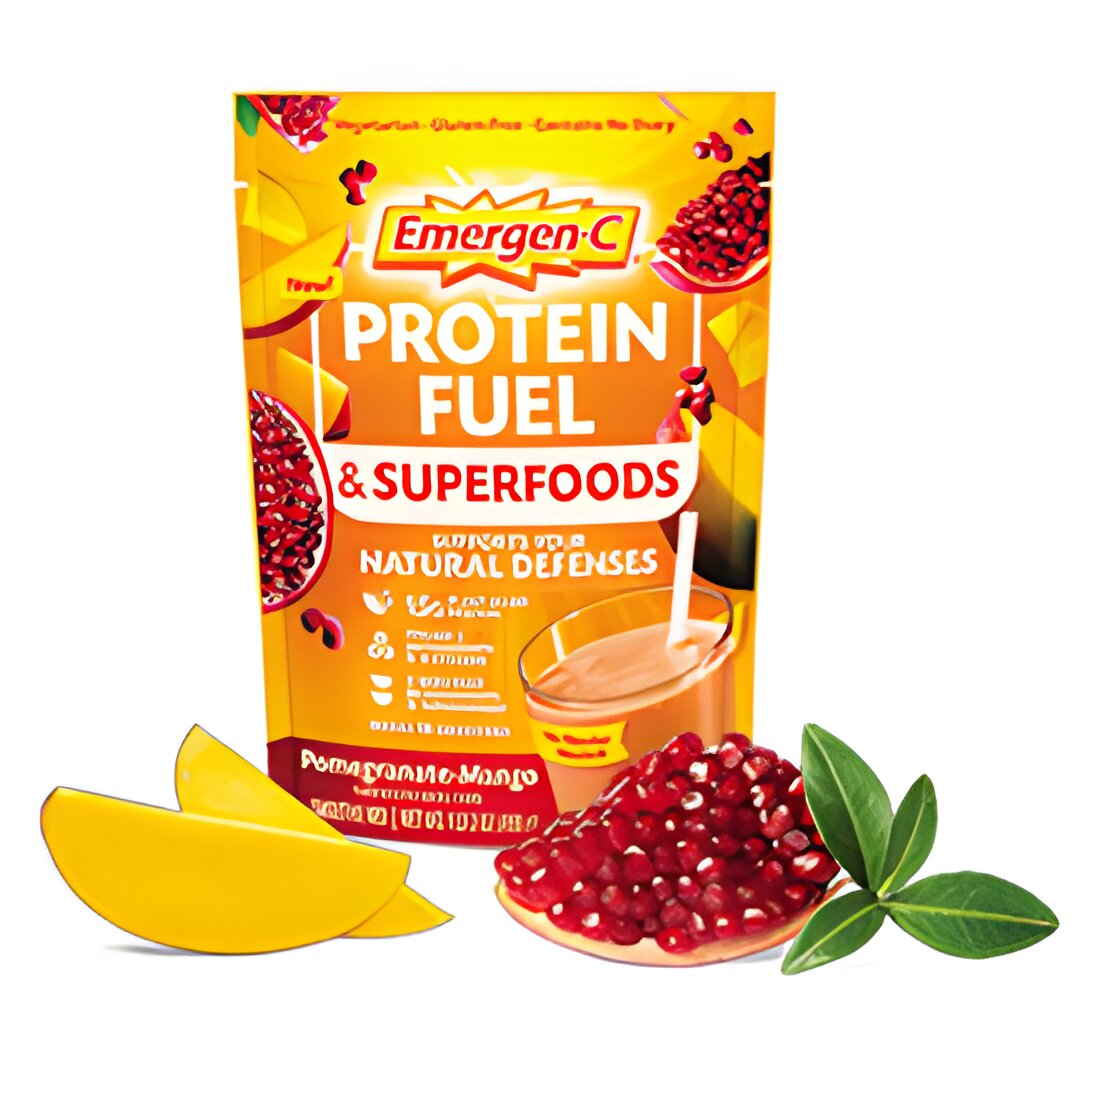 Free Emergen-C Sample Vitamin Drink Mix